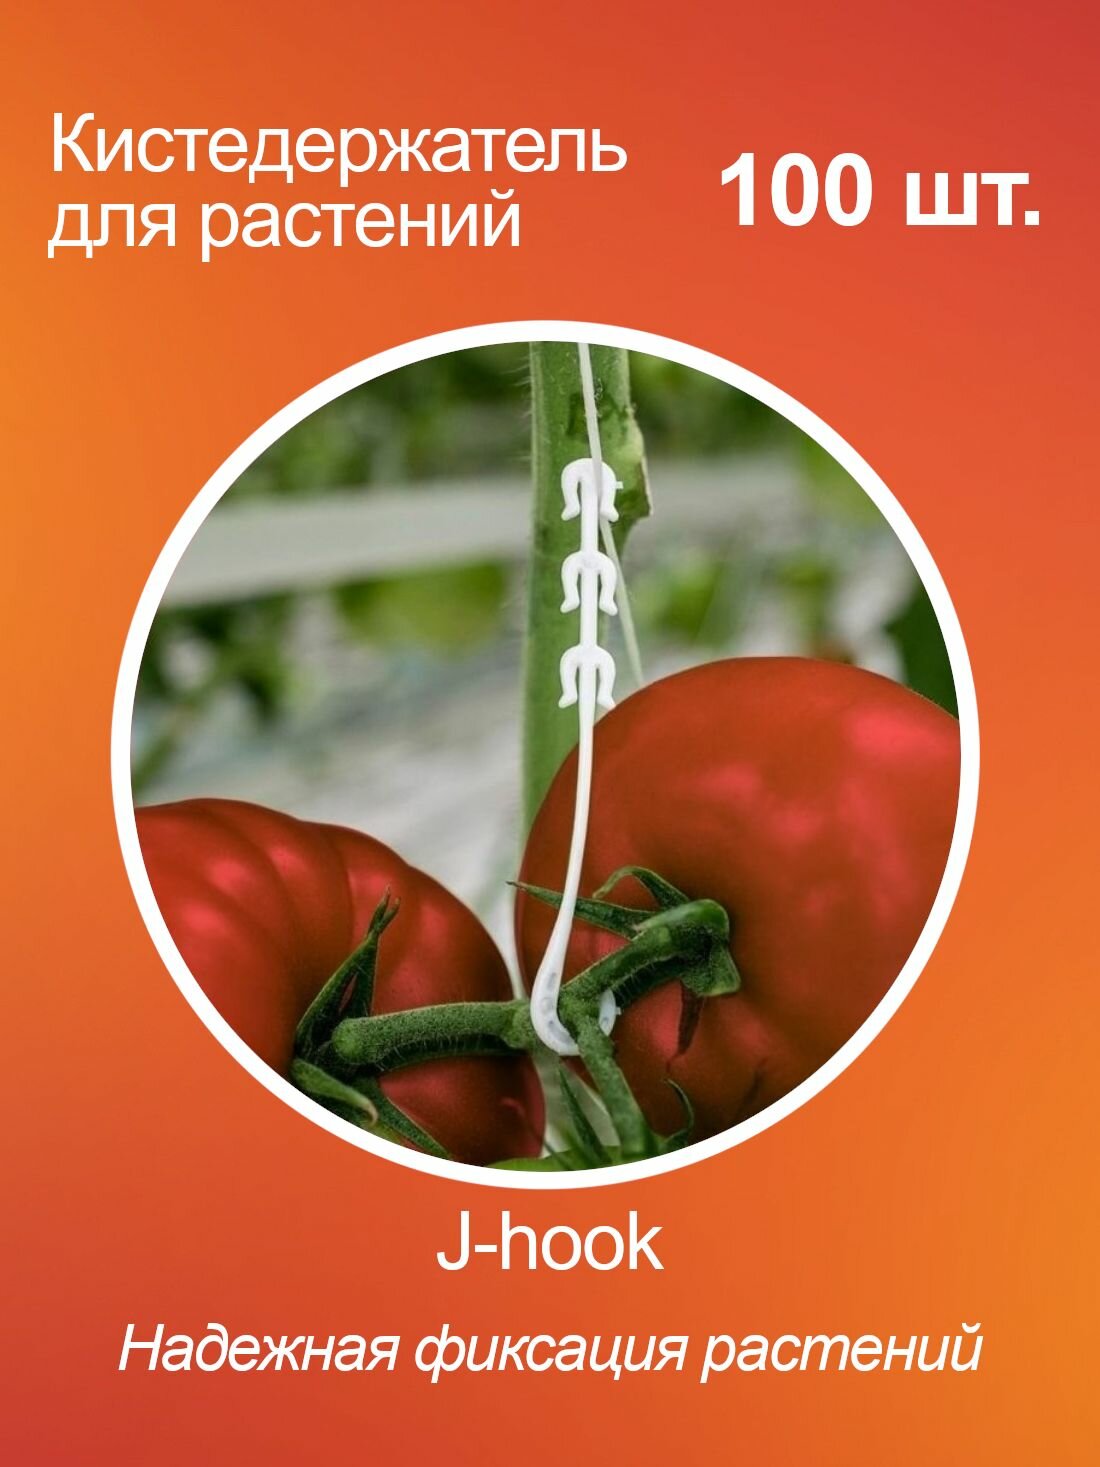 Кистедержатель для томатов помидор и растений J-hook, пластик, 100 шт.